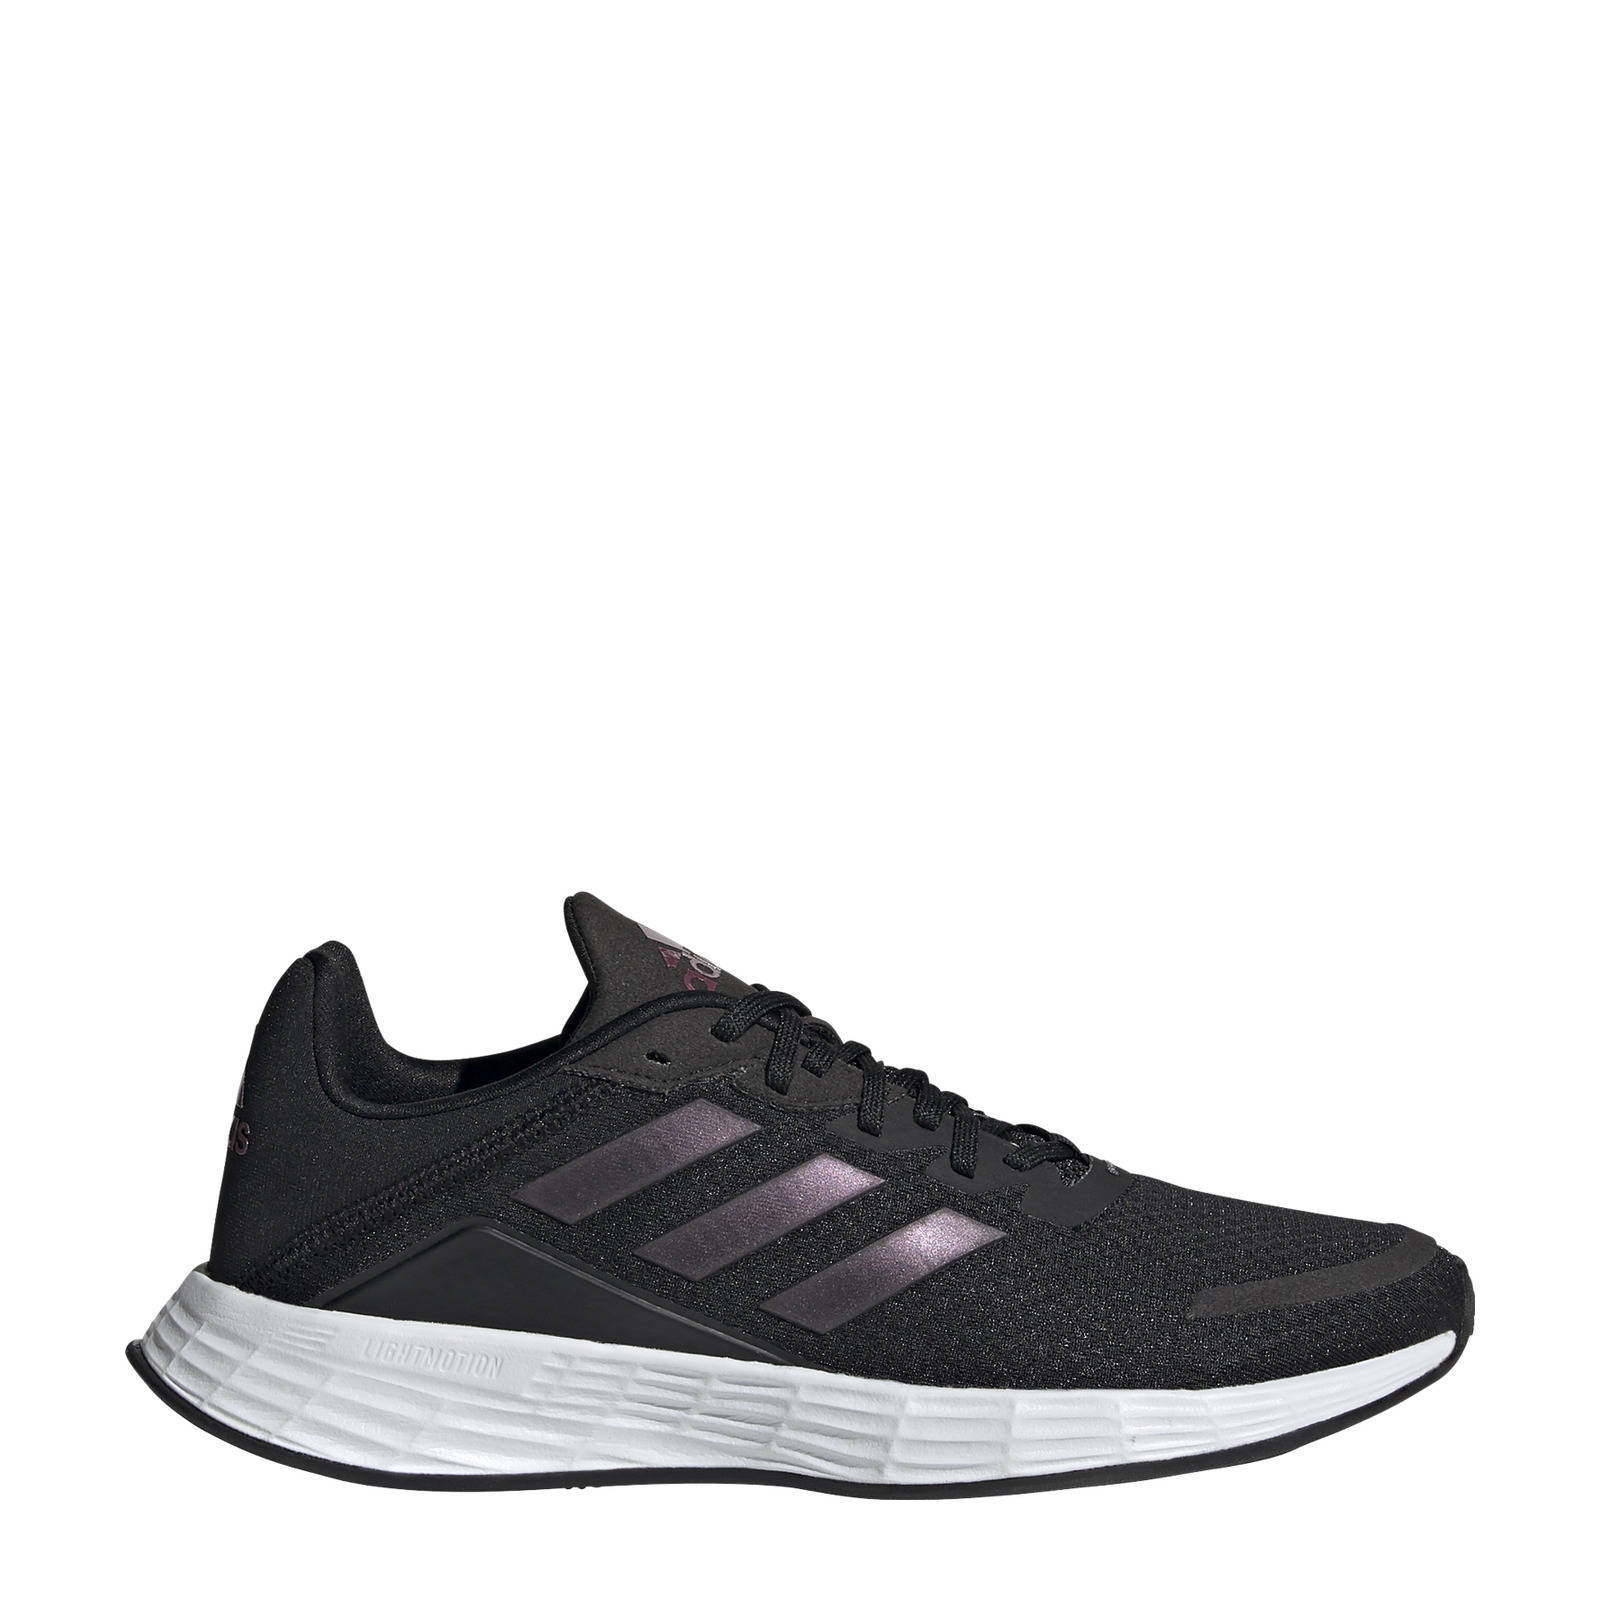 Adidas Performance Duramo Sl Classic hardloopschoenen zwart/wit online kopen